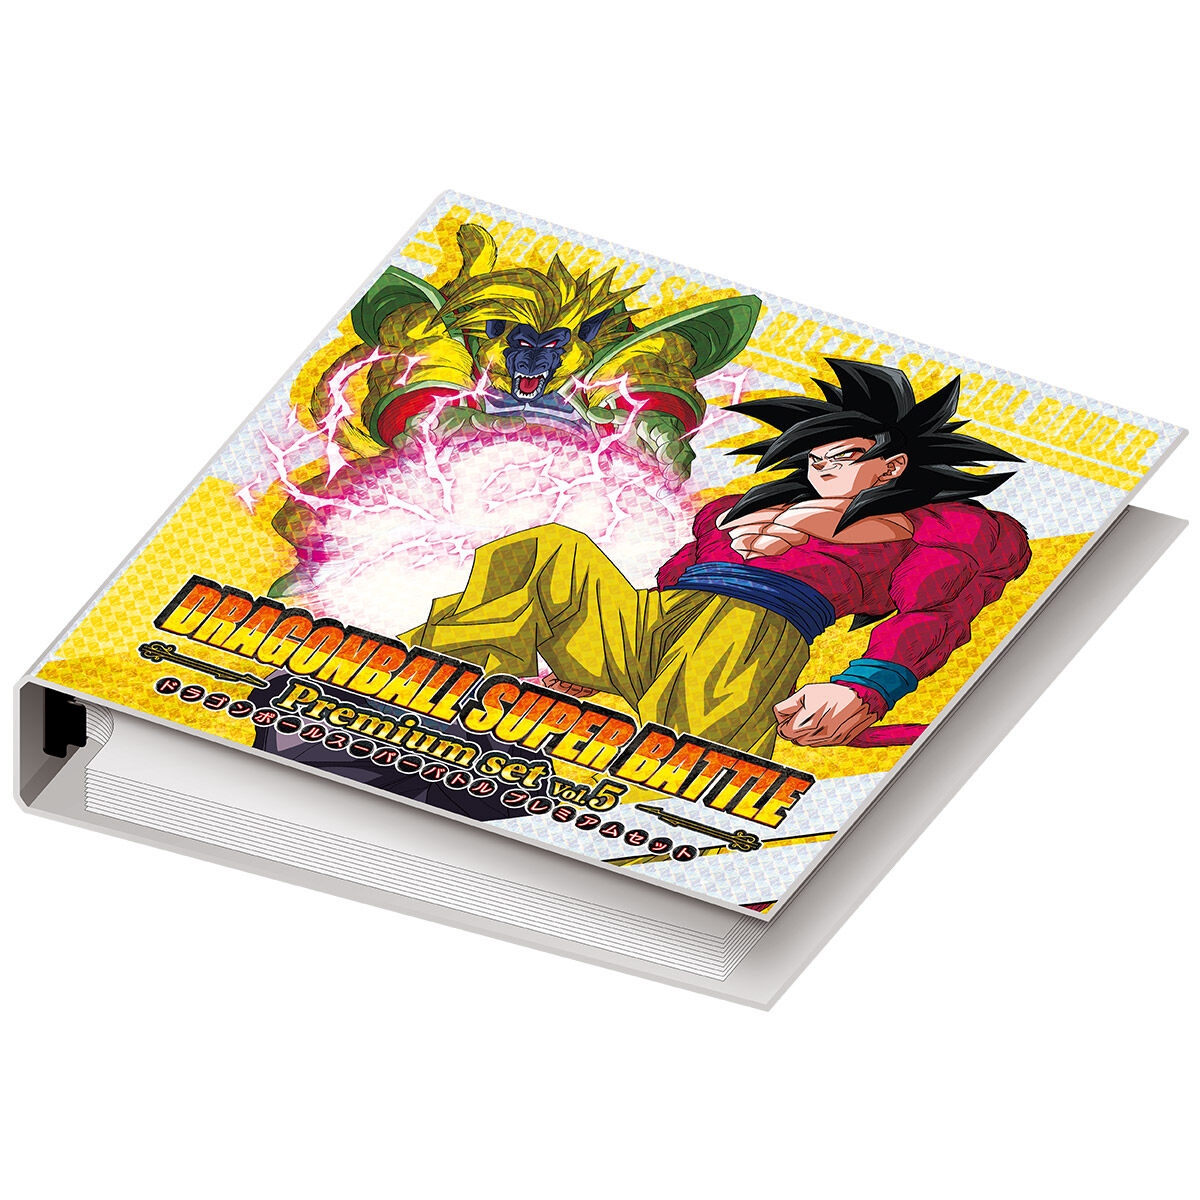 トレーディングカードドラゴンボール スーパーバトル Premium set Vol.5